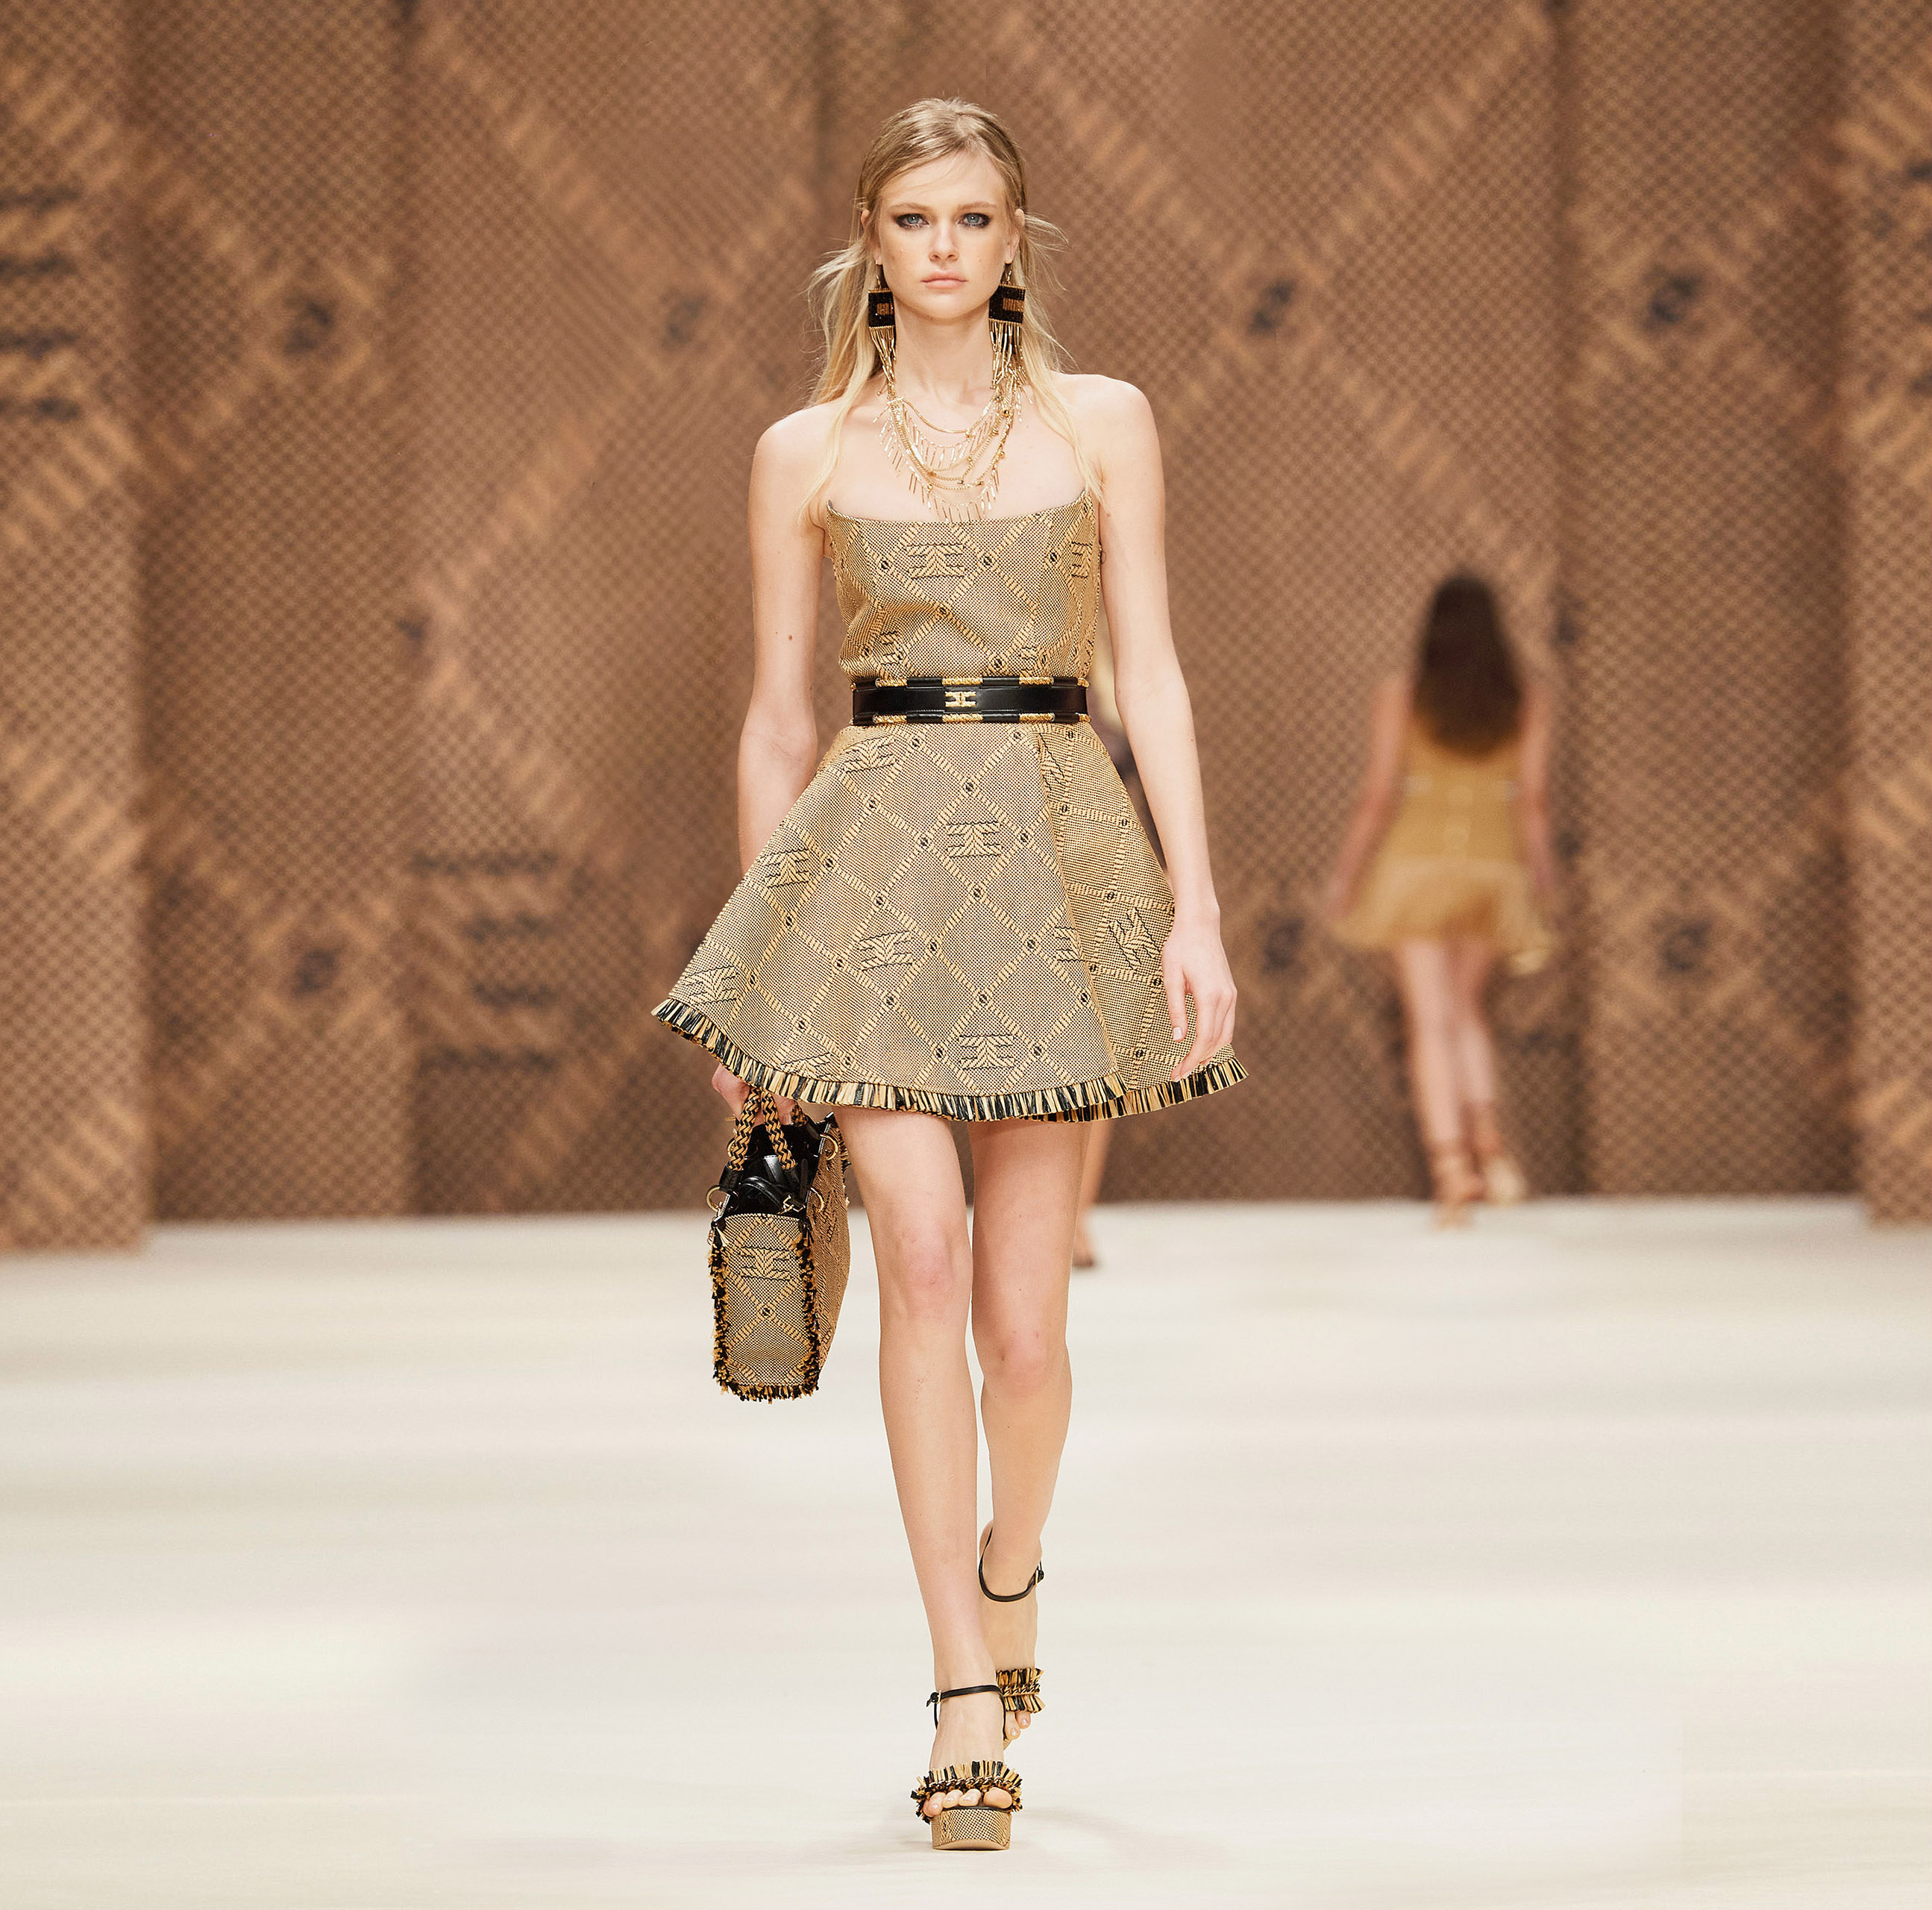 Raffia mini dress with diamond pattern - Elisabetta Franchi